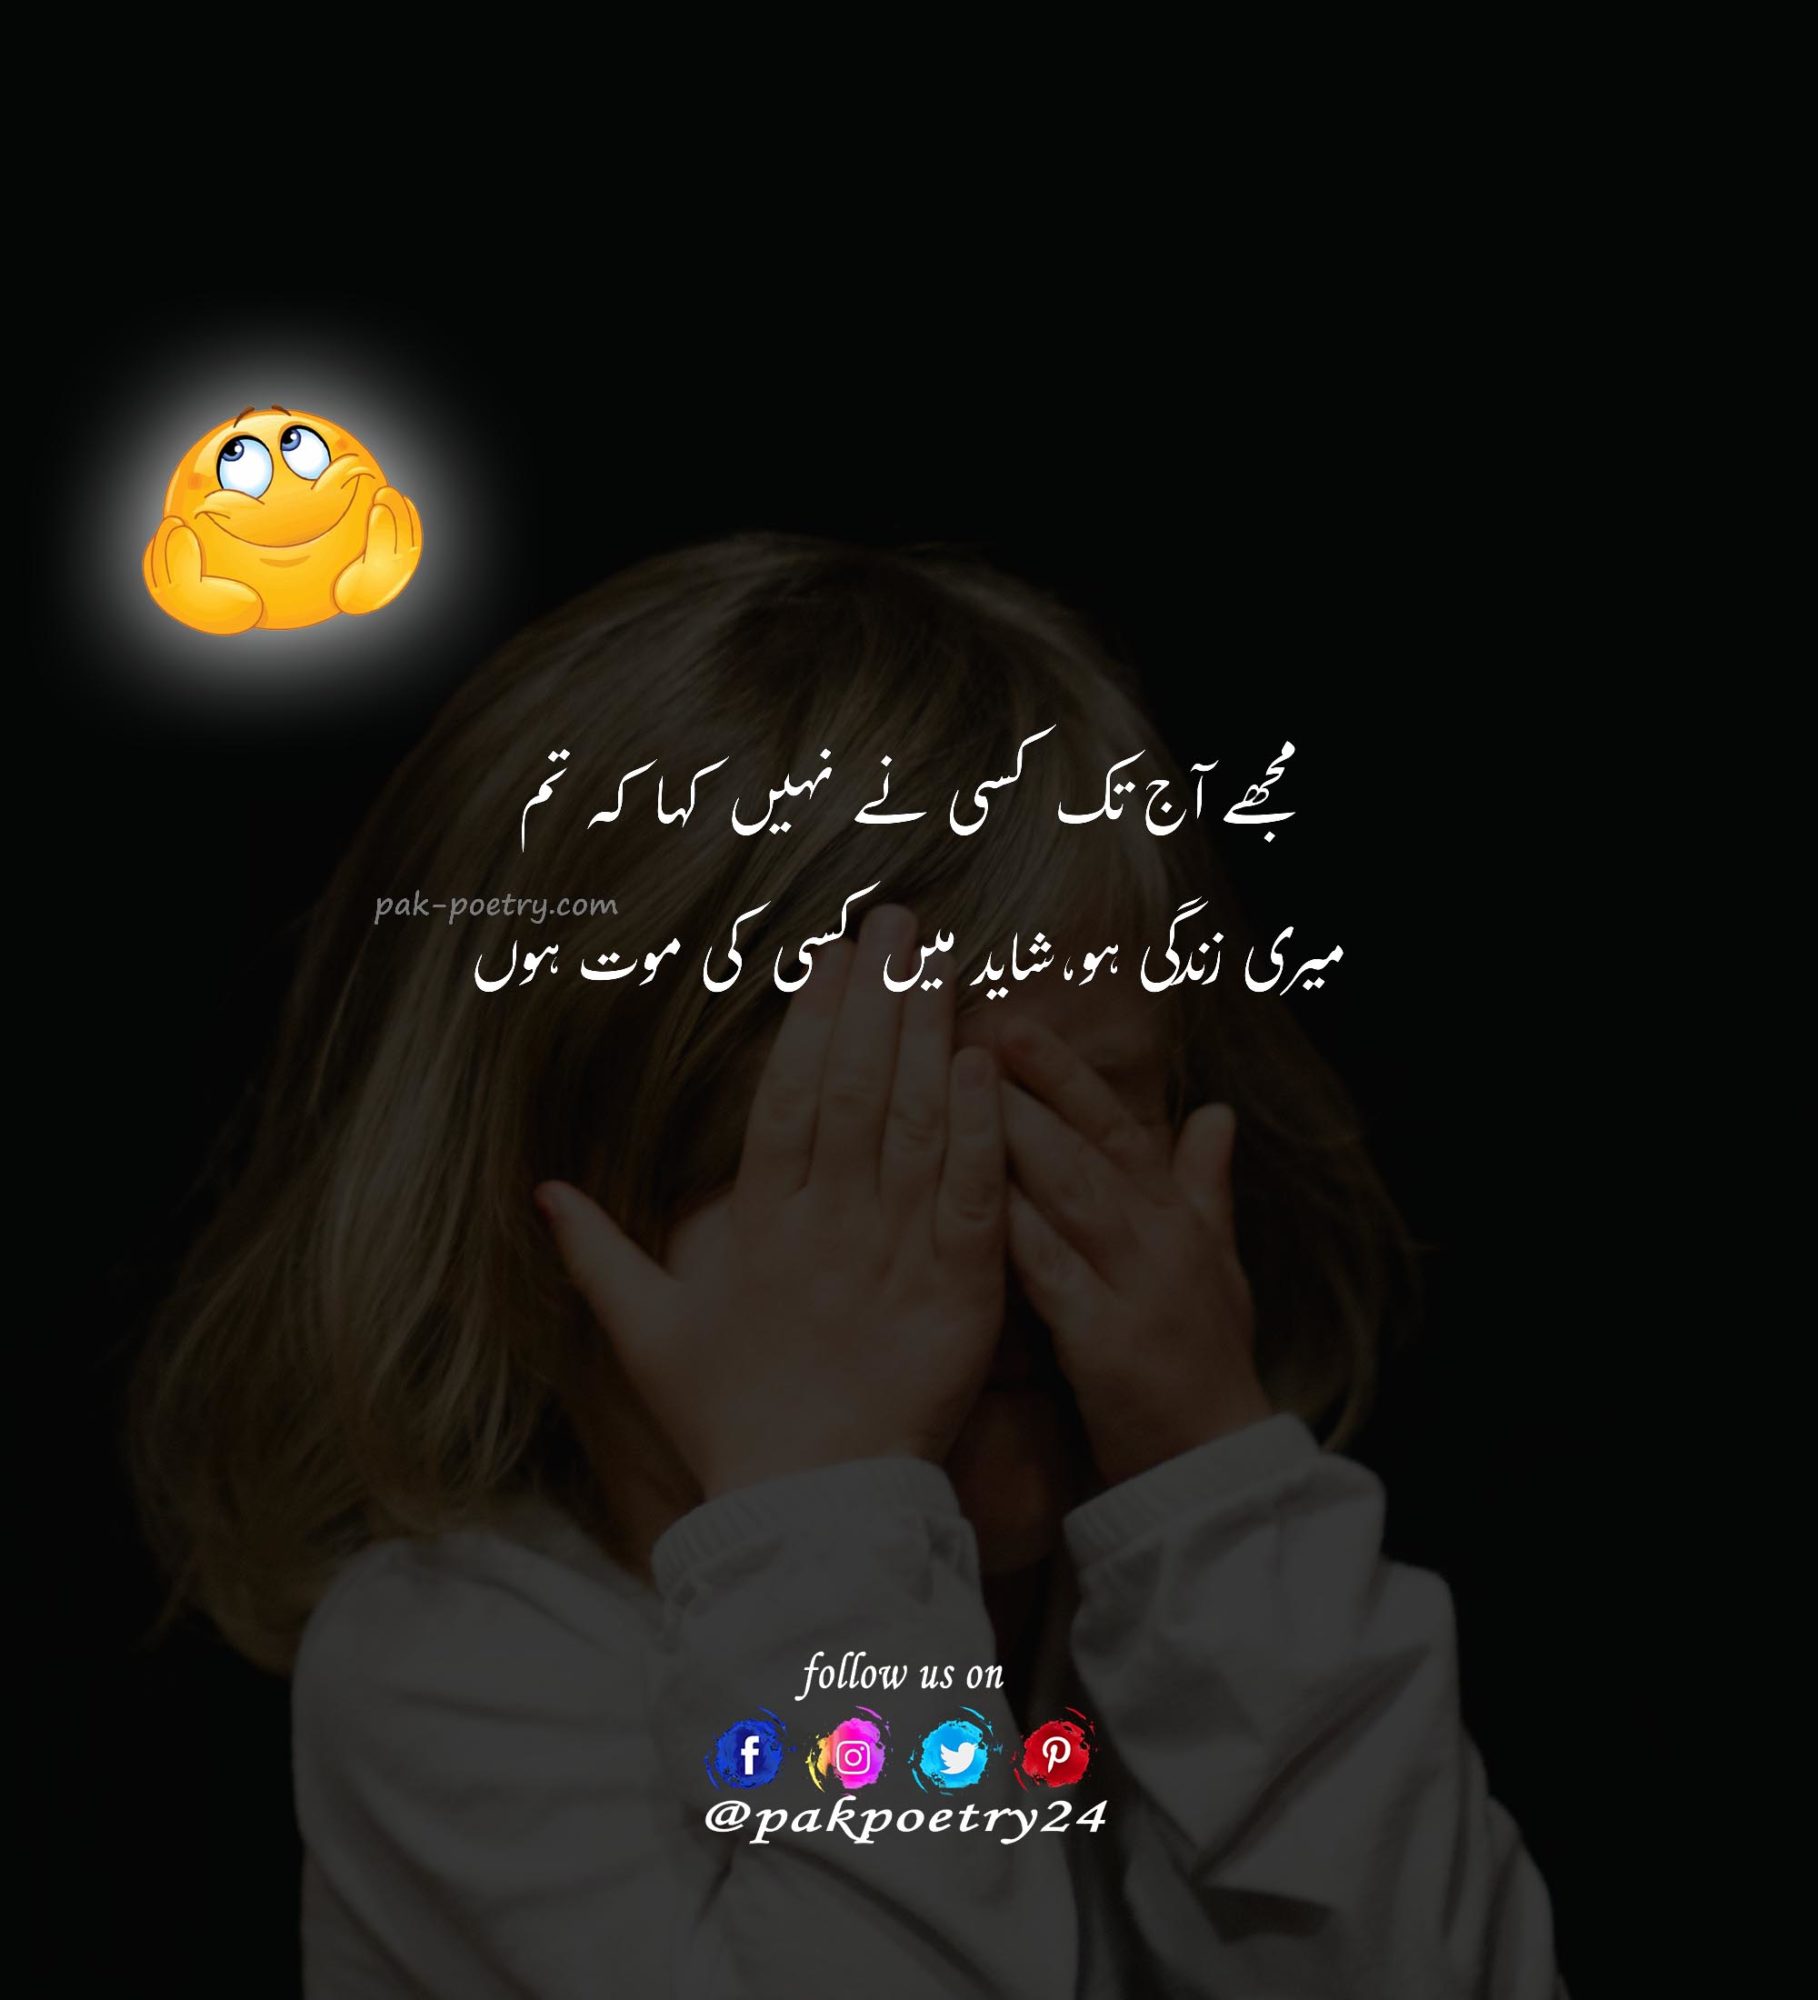 Kll khon ka test krwaya or result A+ Aya - Funny Jokes Urdu - Pak Poetry 24